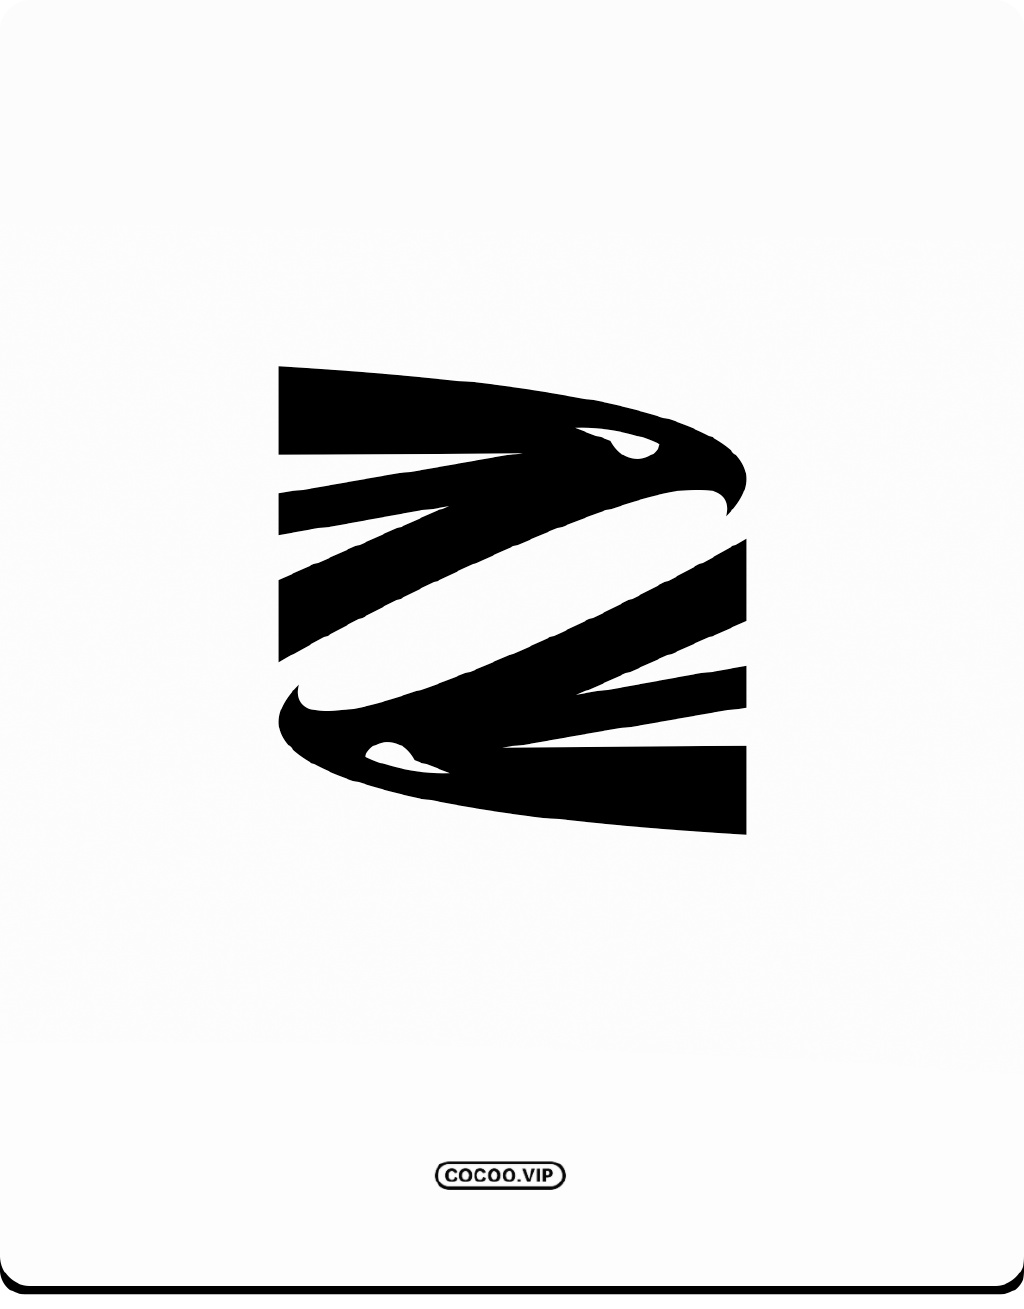 【平面设计】零基础学习品牌VI设计如何让logo设计更突出